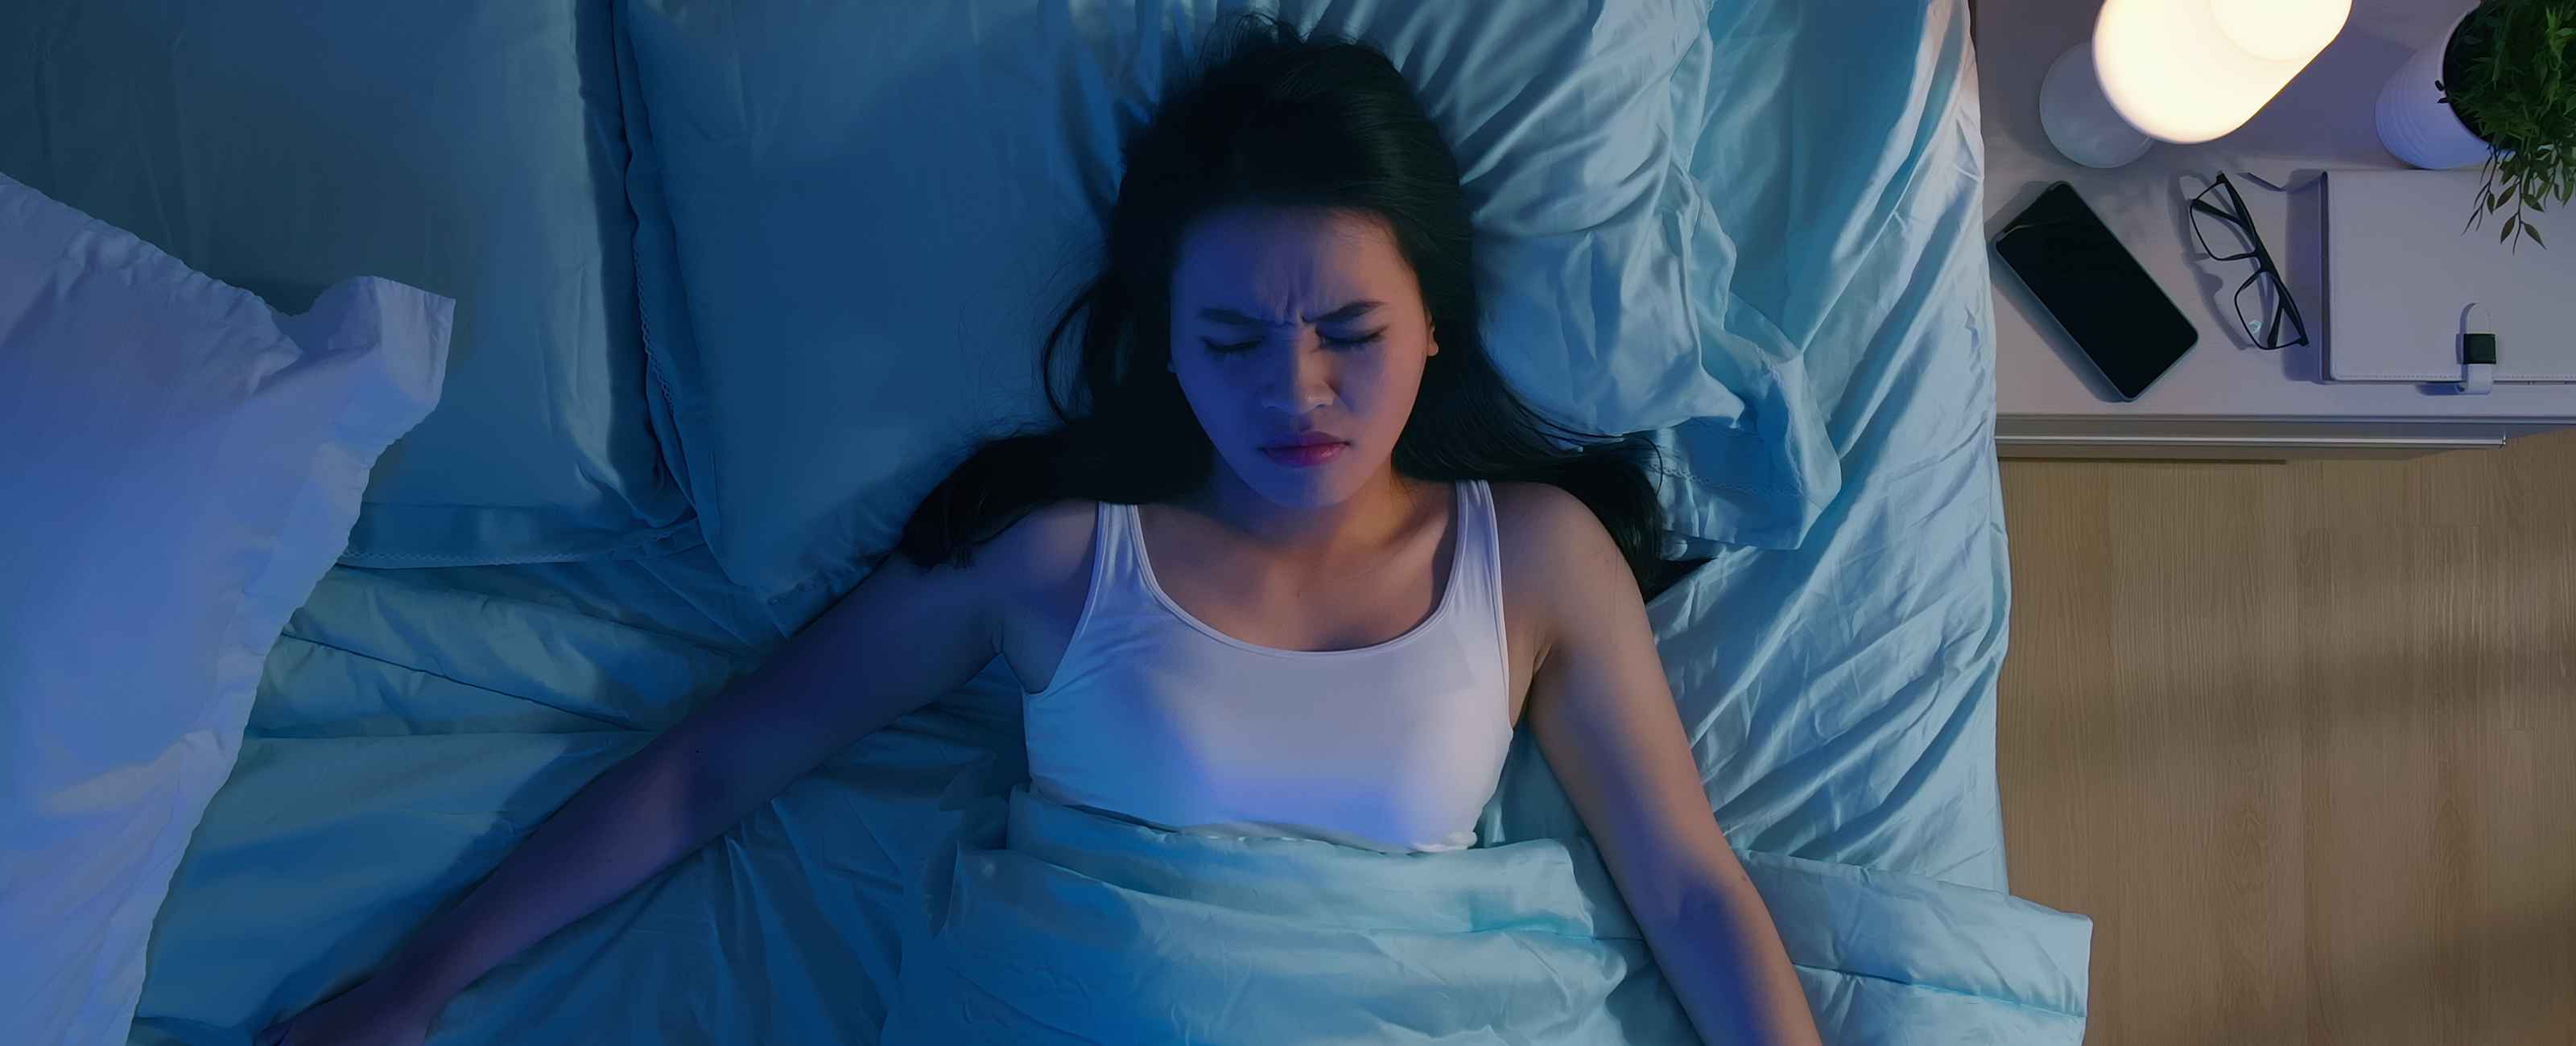 Comment prévenir les troubles du sommeil naturellement ?